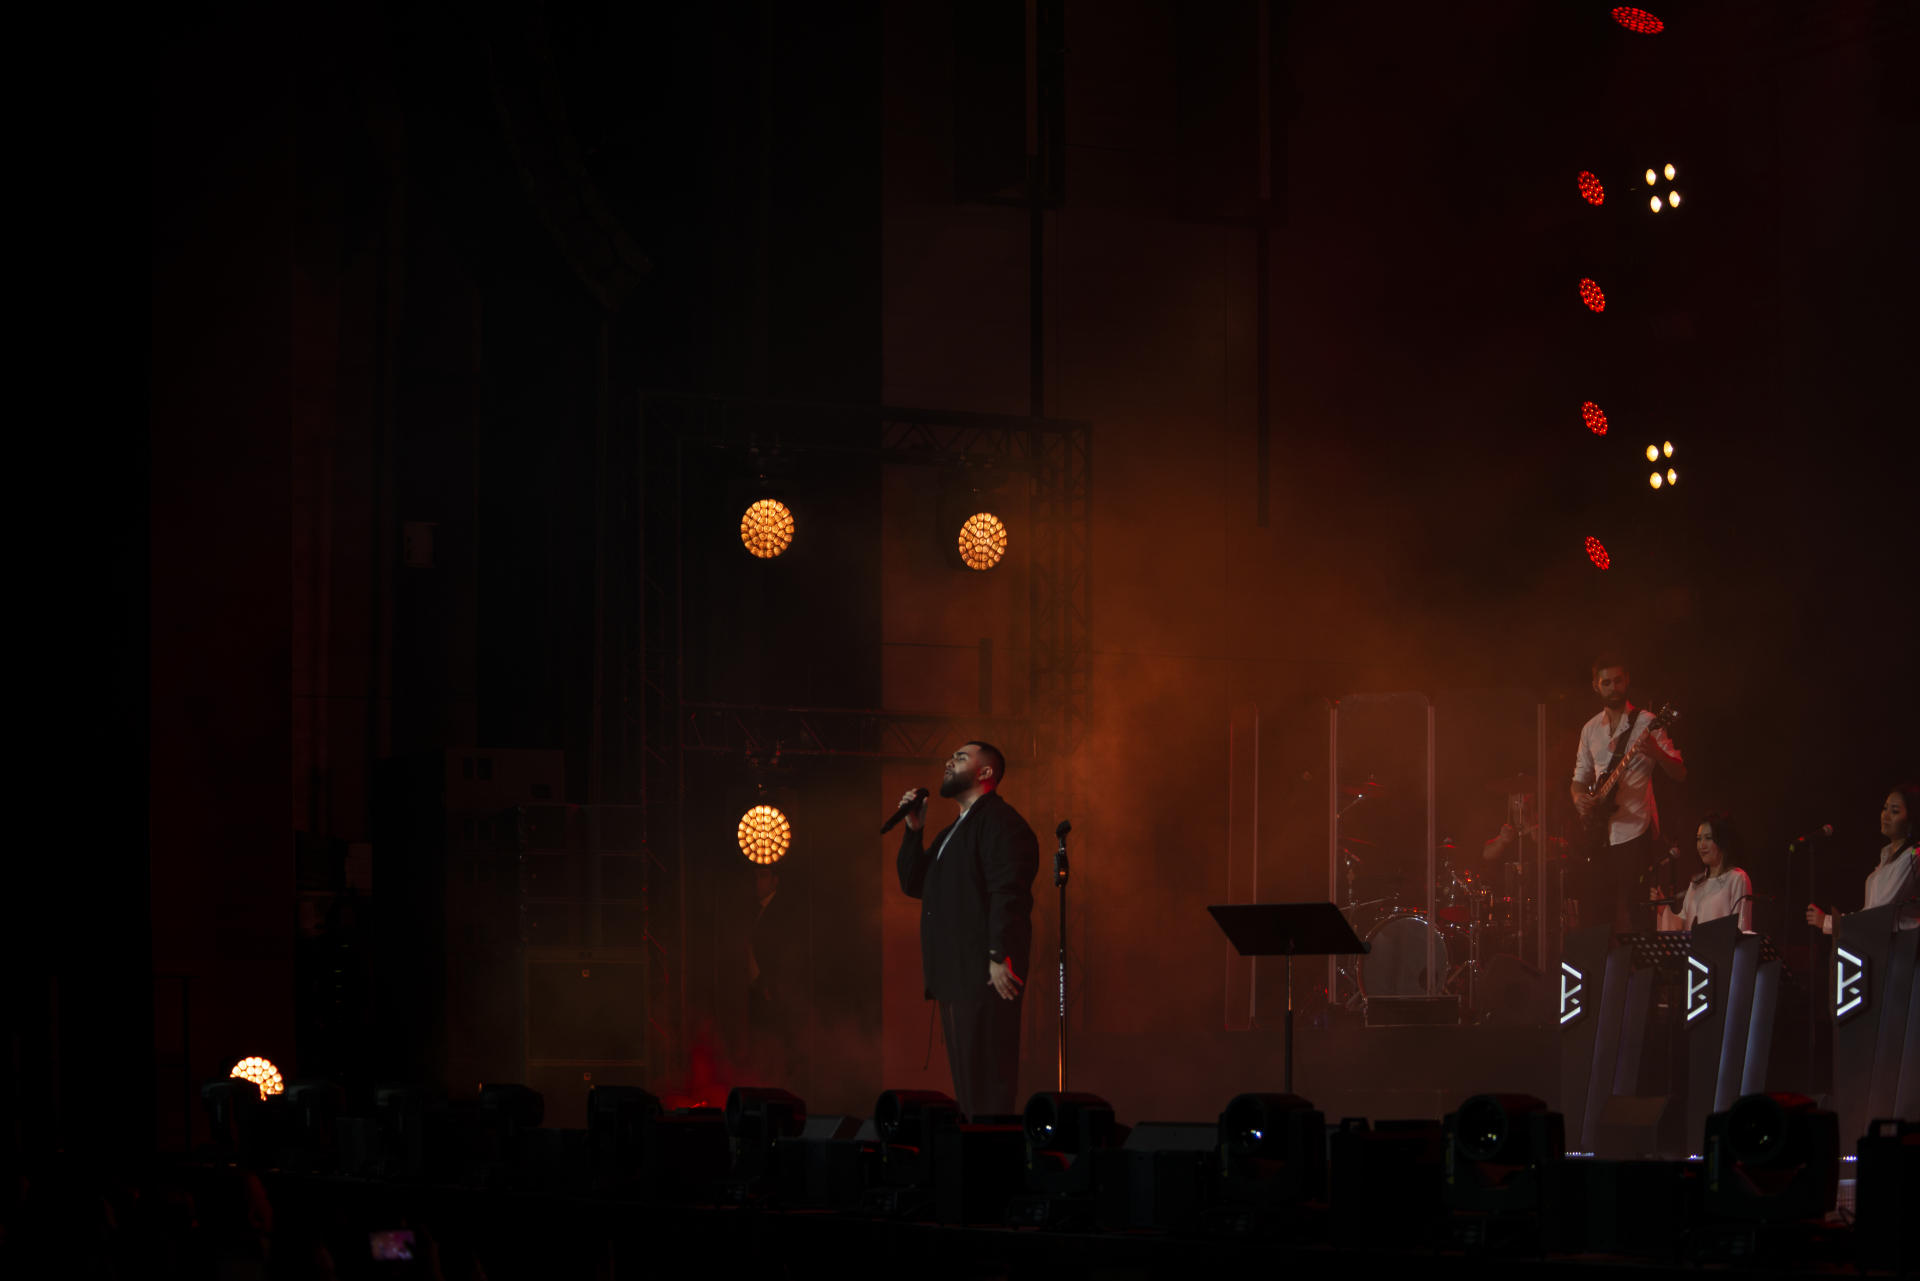 Феерическое шоу Jah Khalib в Баку: Моя главная цель дарить людям эмоции (ФОТО)